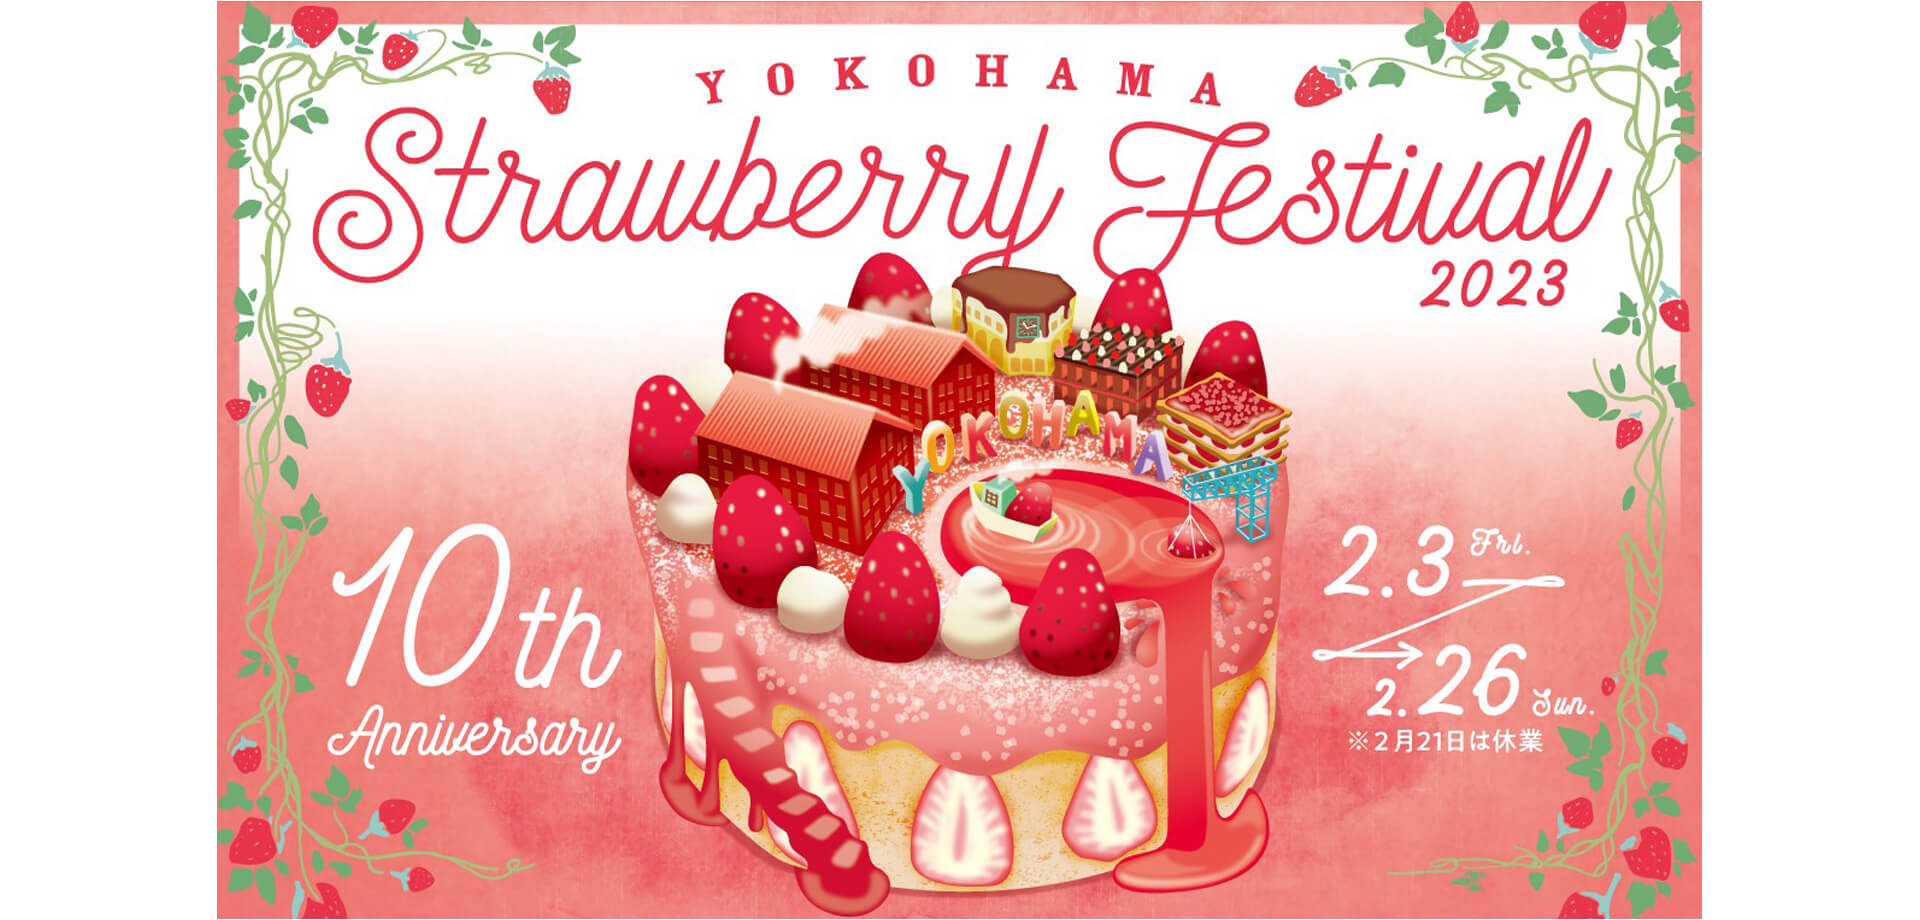 横浜赤レンガ倉庫 Yokohama Strawberry Festival 2023